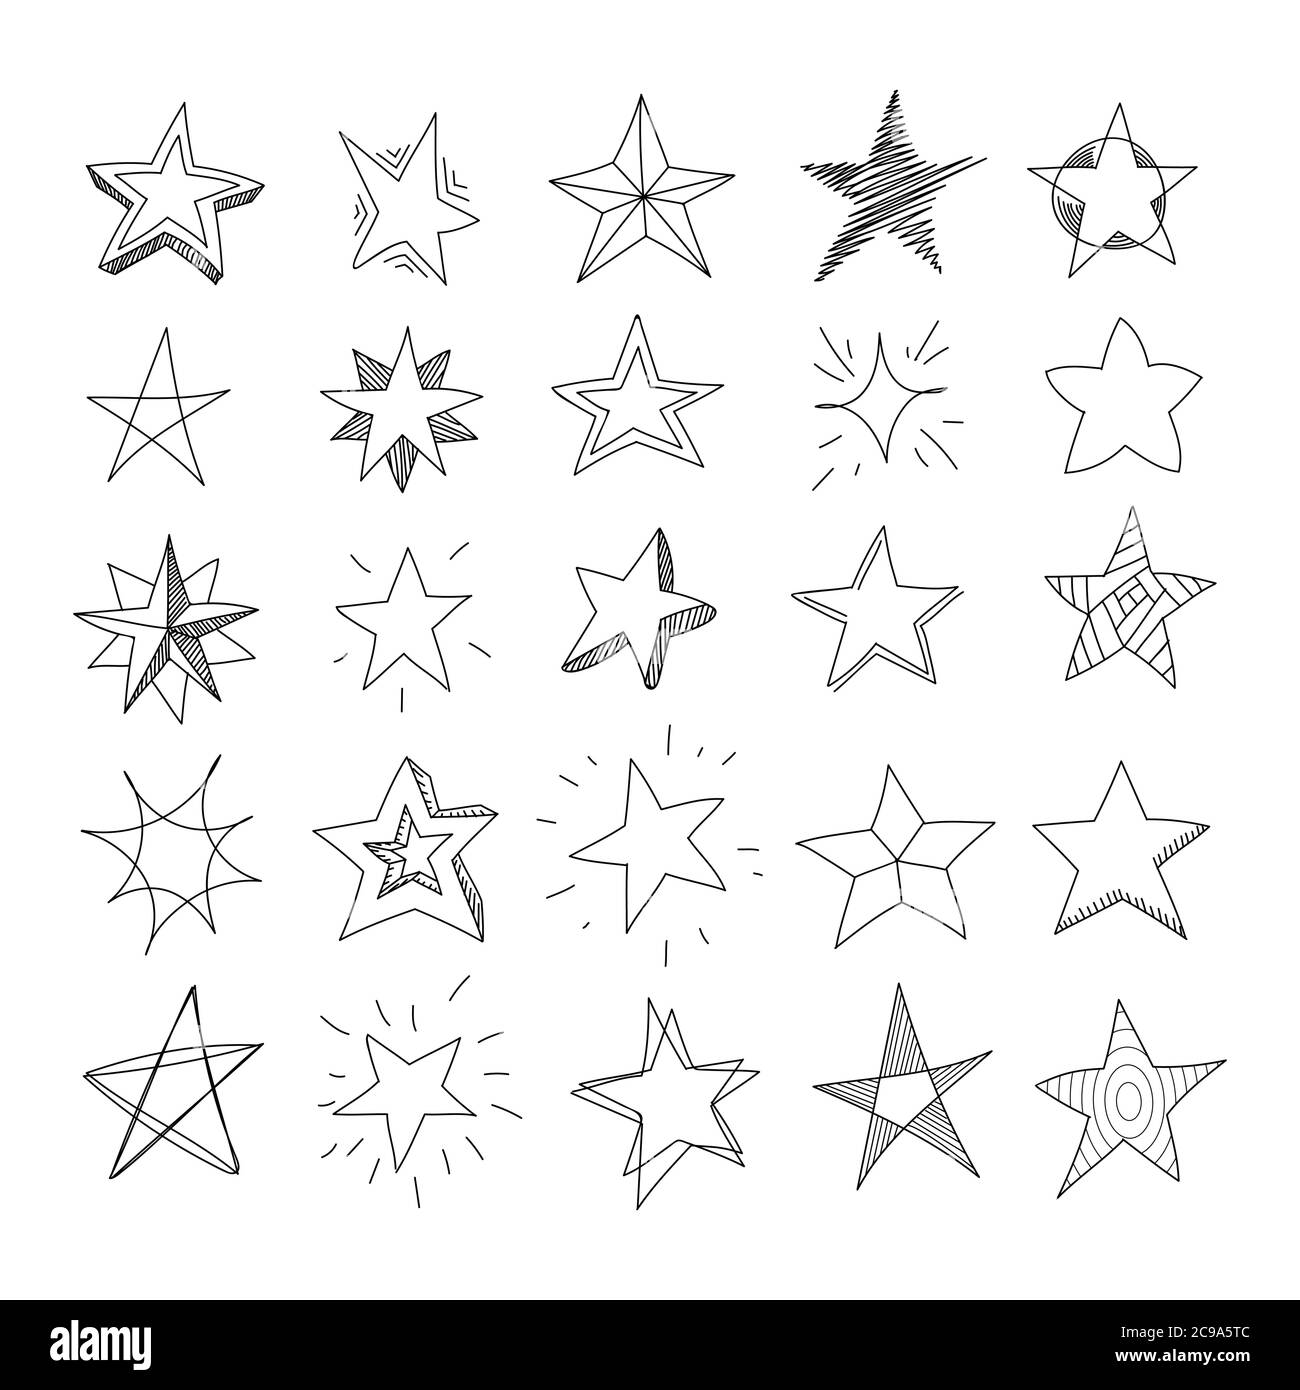 Handgezeichnete Sterne. Set von schwarzen Sternen im Doodle-Stil auf weißem Hintergrund. Vektorgrafik Stock Vektor